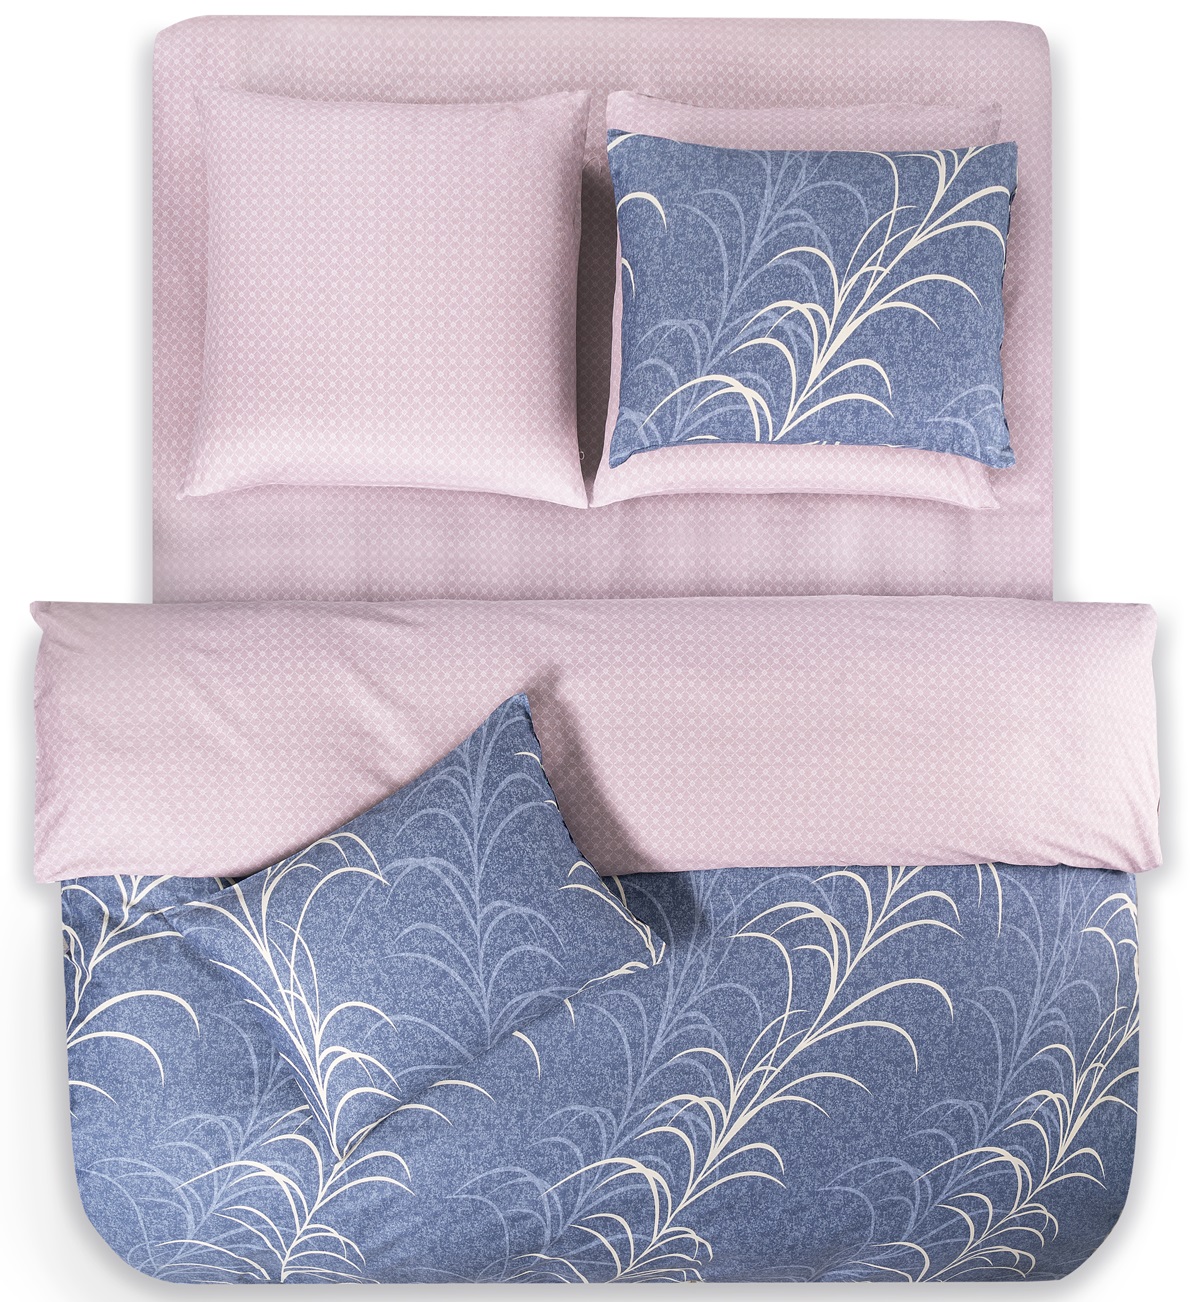 Комплект постельного белья Prime Prive Скара разноцветный Двуспальный, размер Двуспальный - фото 3